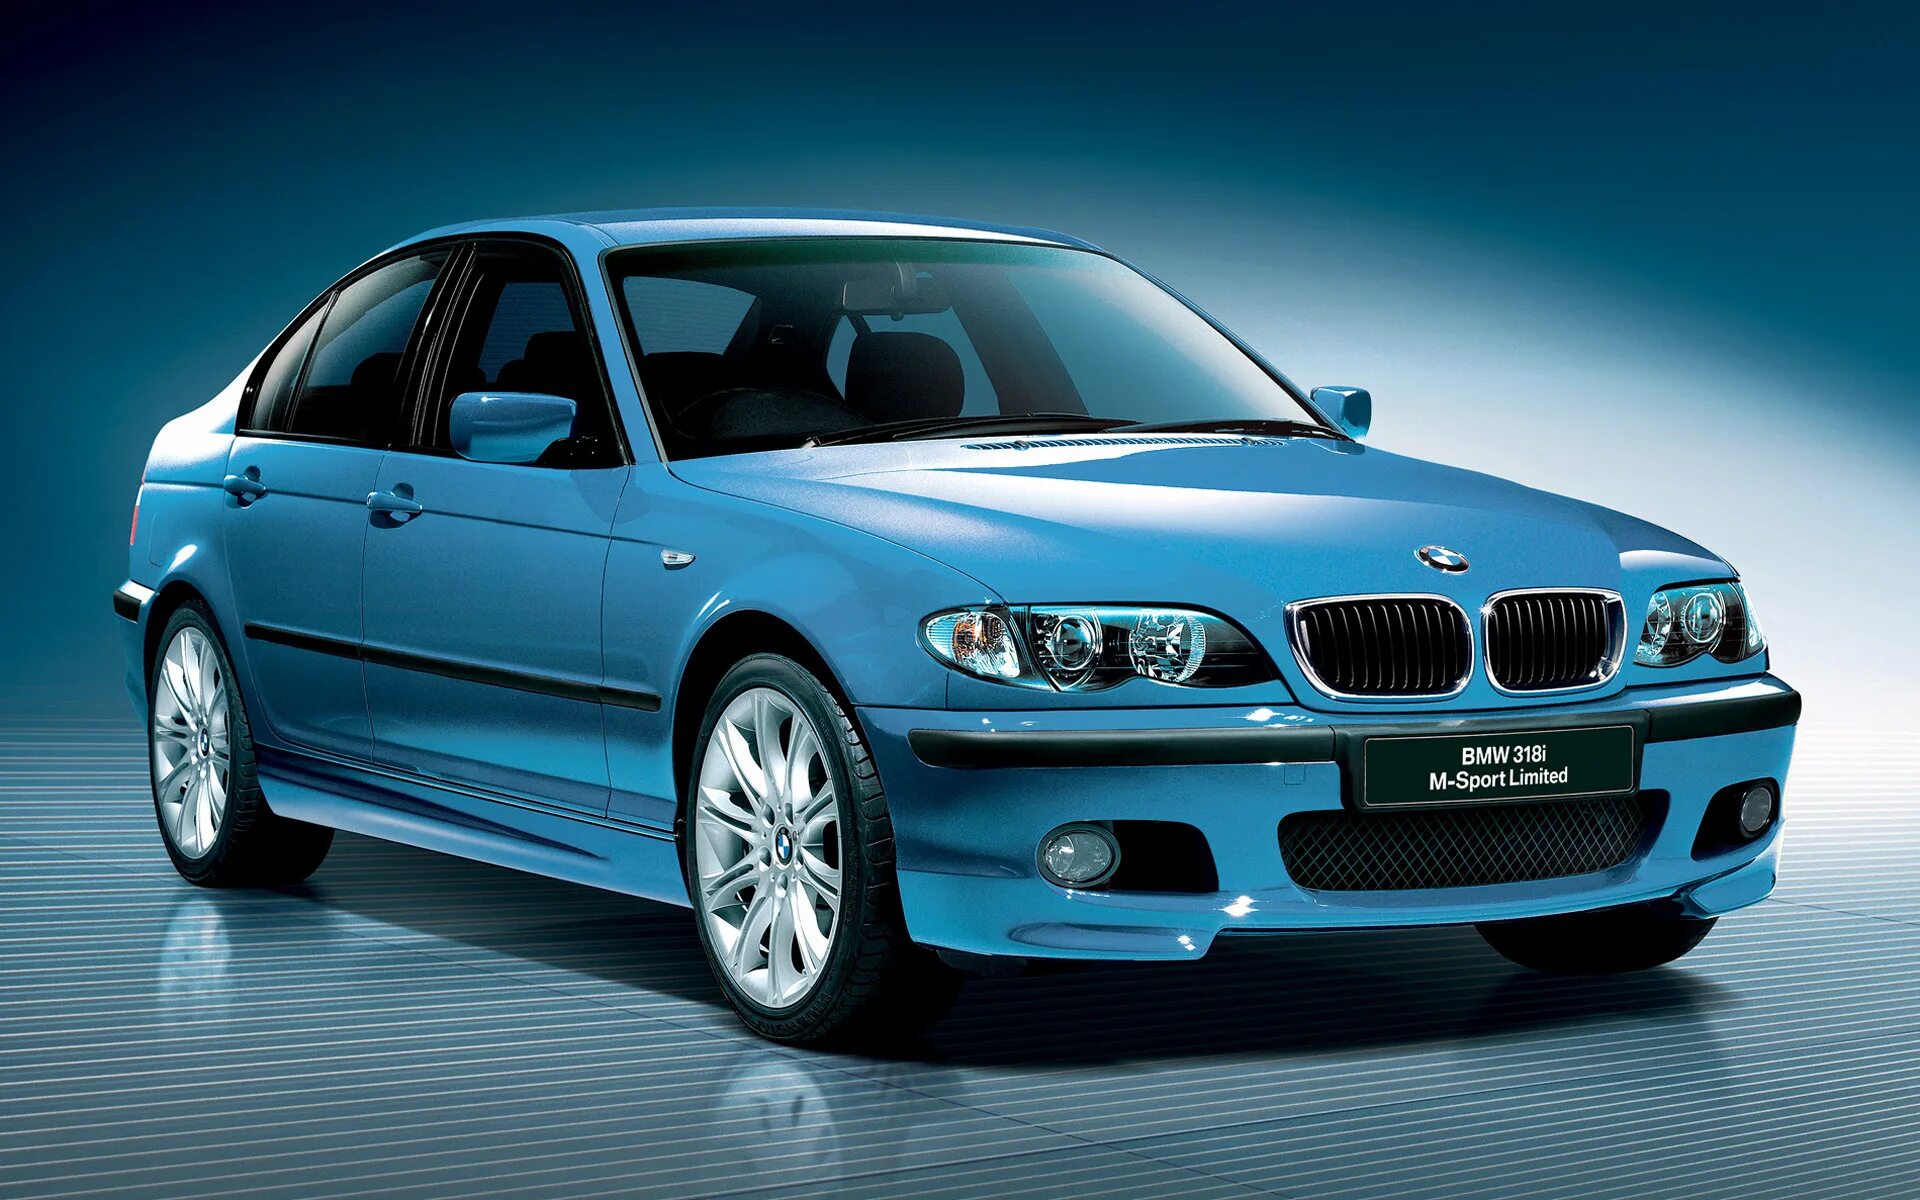 Bmw limited. BMW 3 e46) 318i. BMW e46 318i. BMW 318 e46. BMW 3 e46 2002.